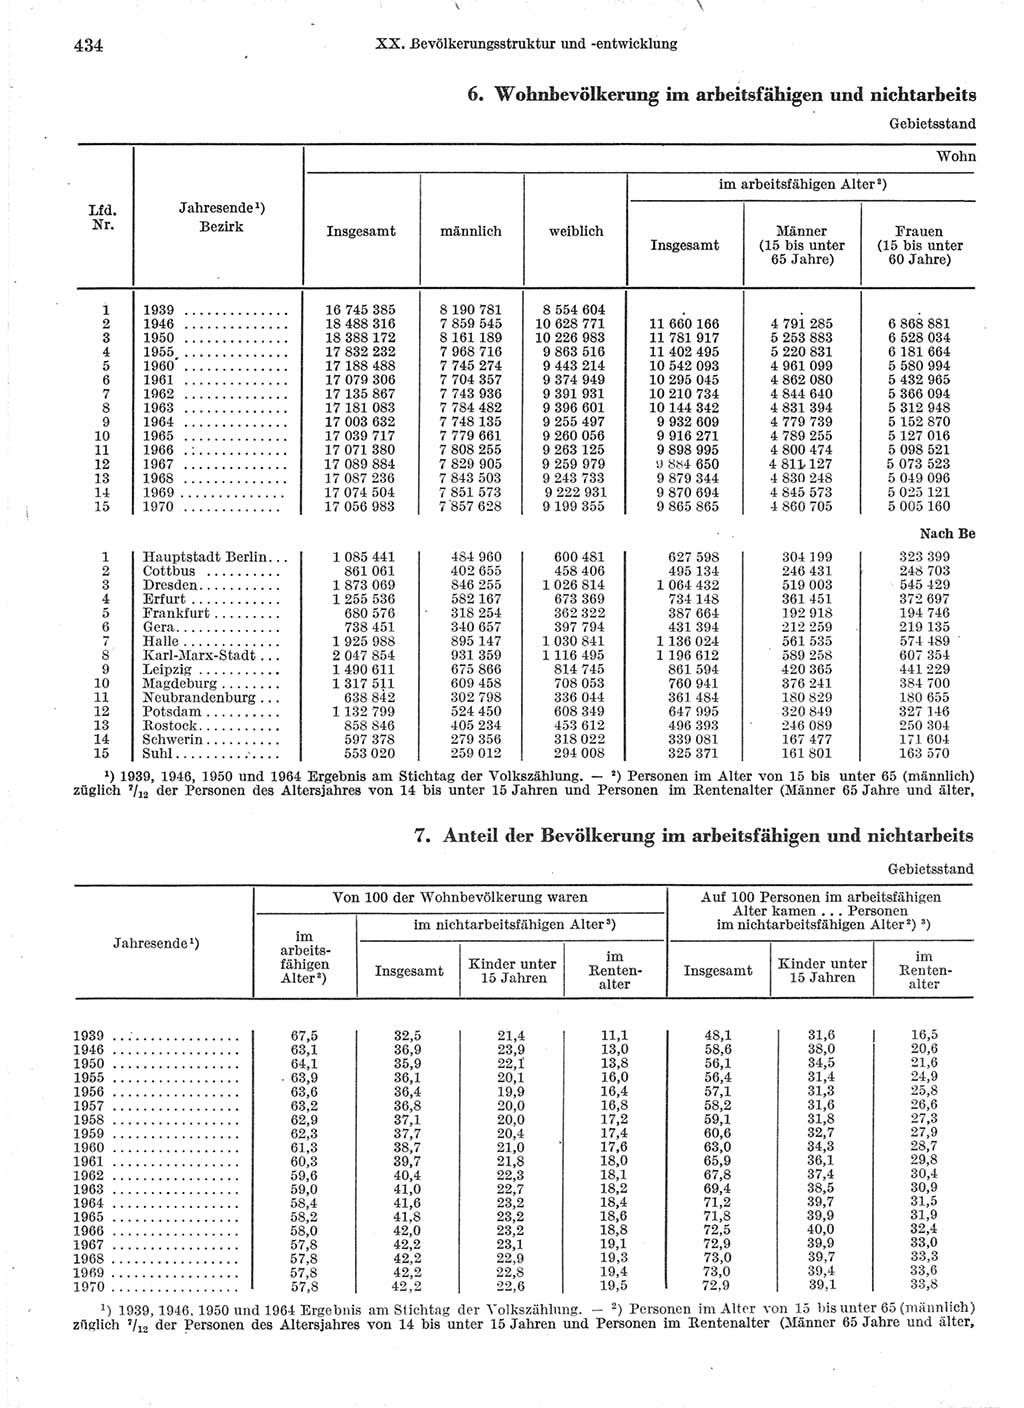 Statistisches Jahrbuch der Deutschen Demokratischen Republik (DDR) 1971, Seite 434 (Stat. Jb. DDR 1971, S. 434)